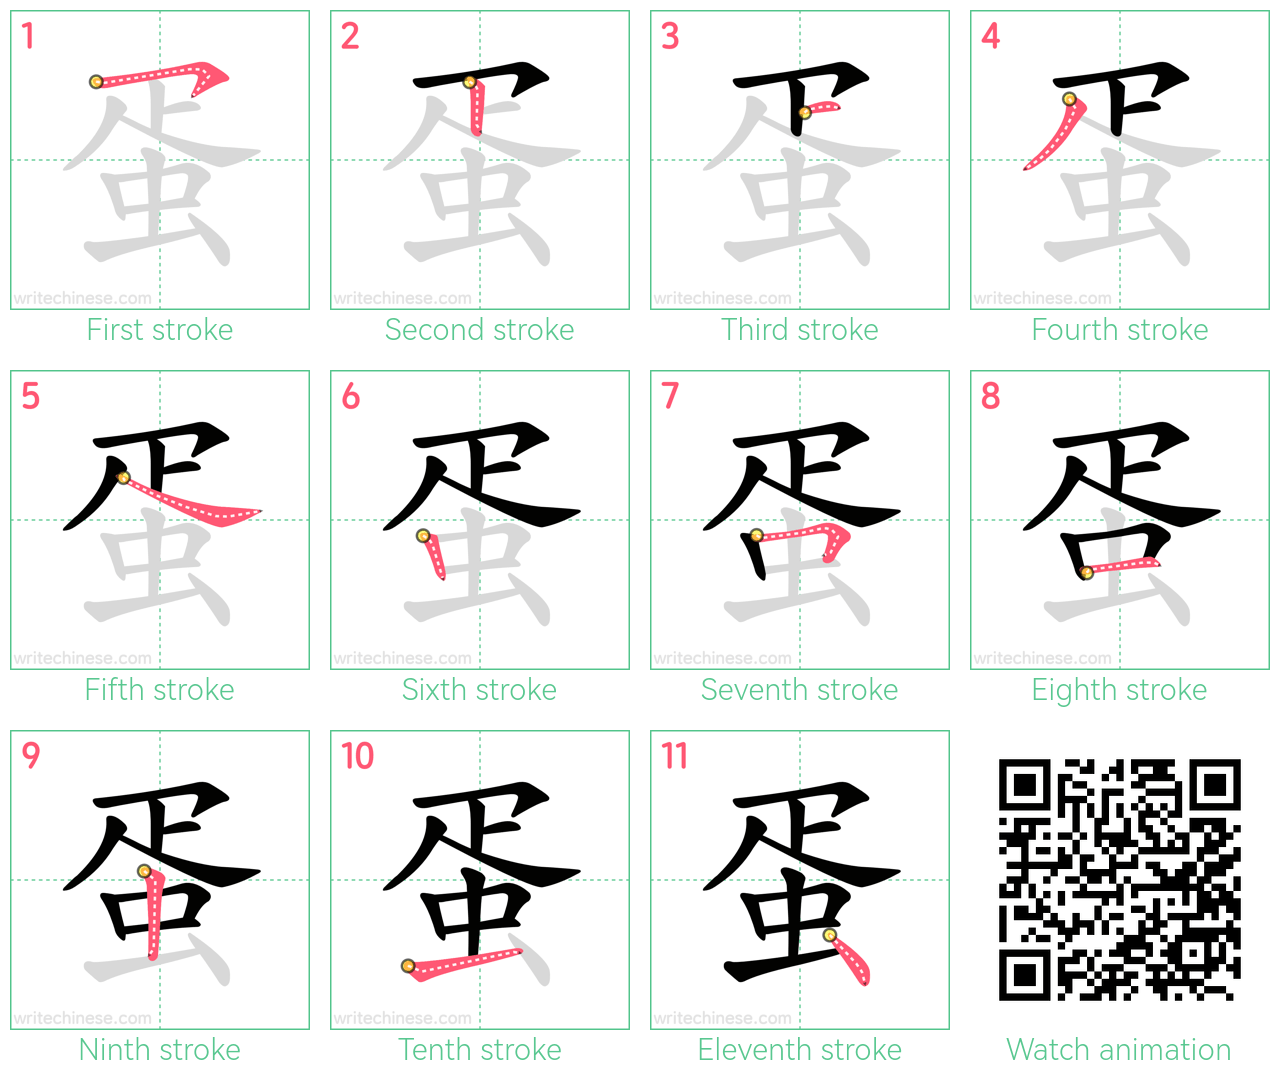 蛋 step-by-step stroke order diagrams